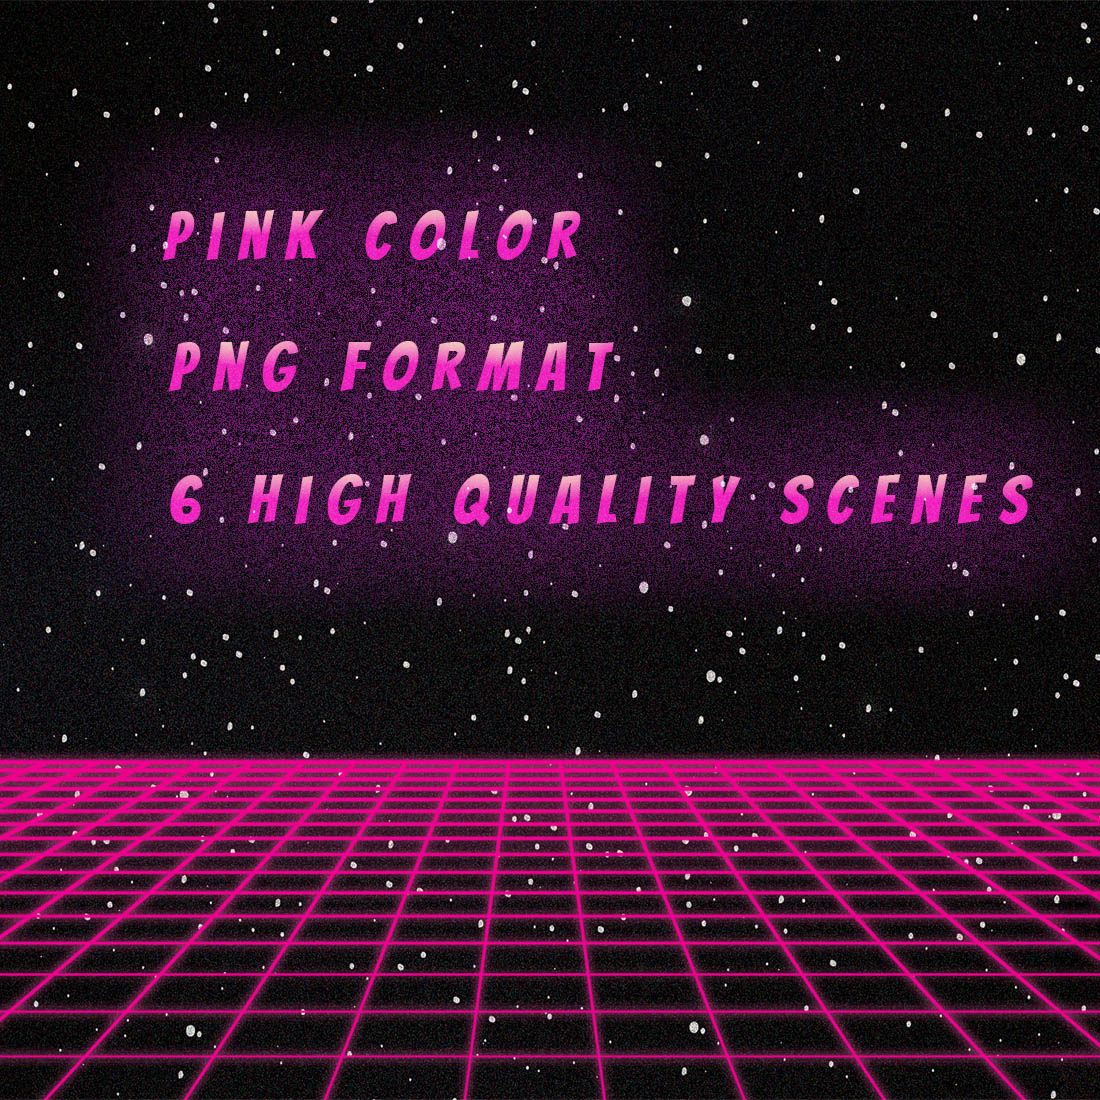 Vaporwave Background Scenes cover image.